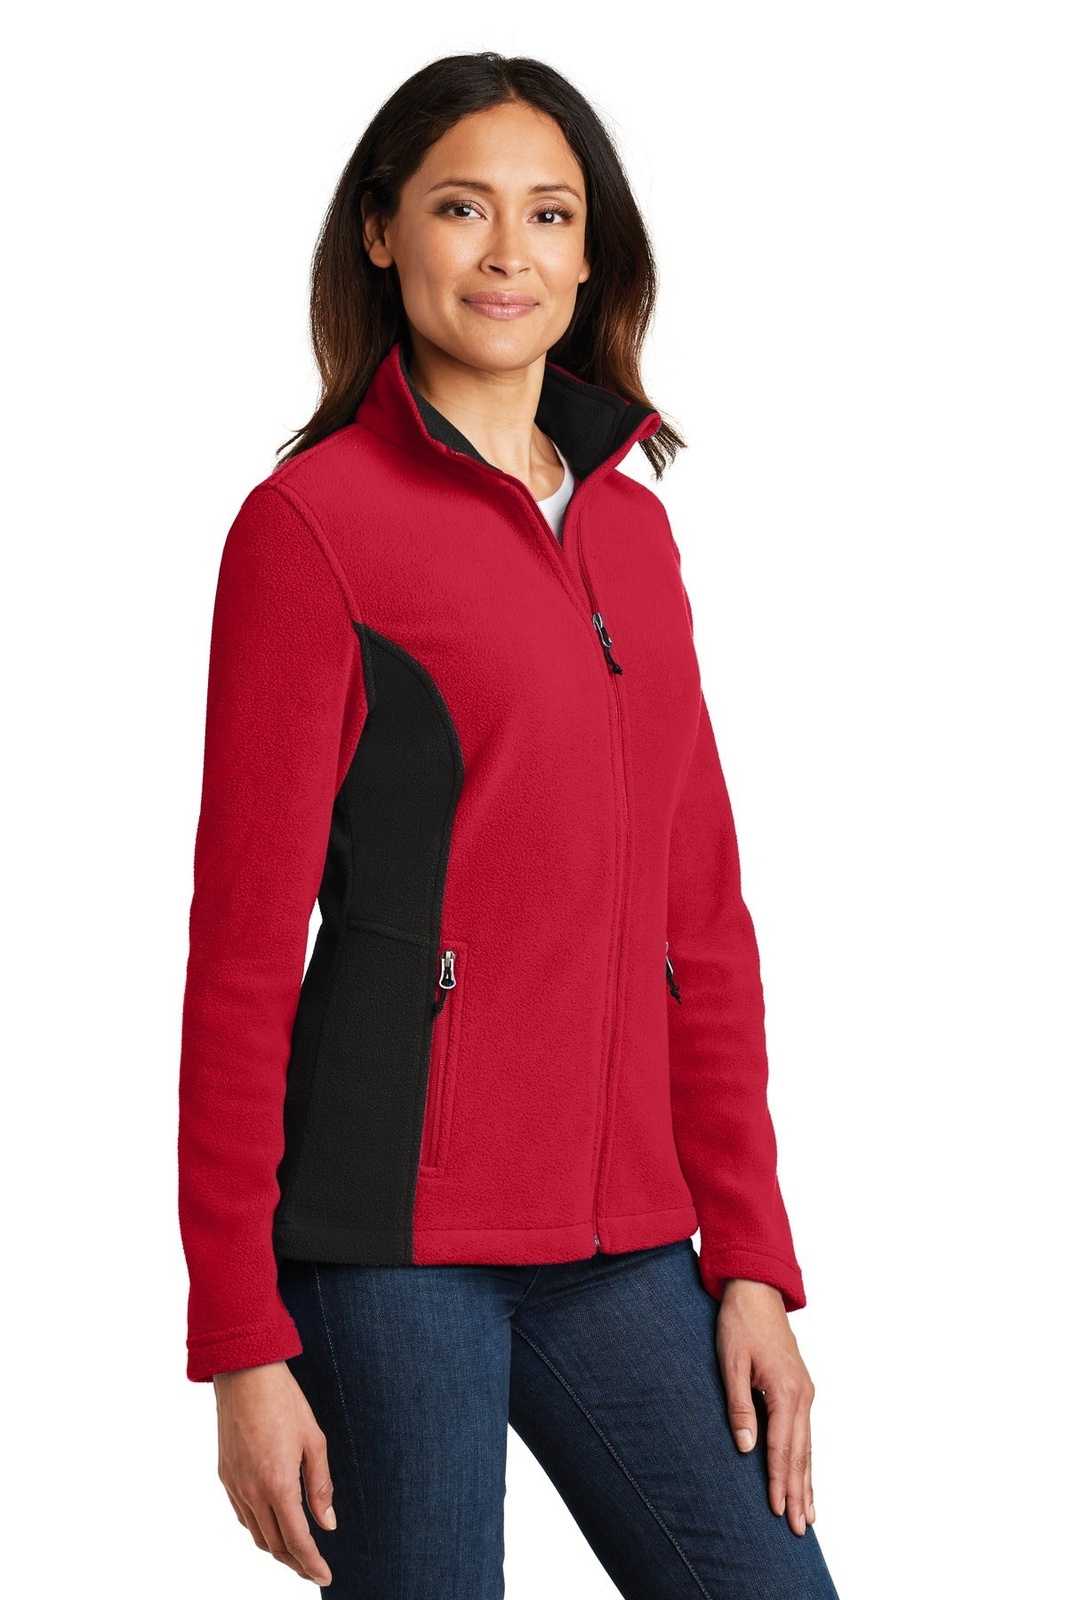 Port Authority L216 Ladies Colorblock Value Fleece Jacket - Rich Red Black - HIT a Double - 4